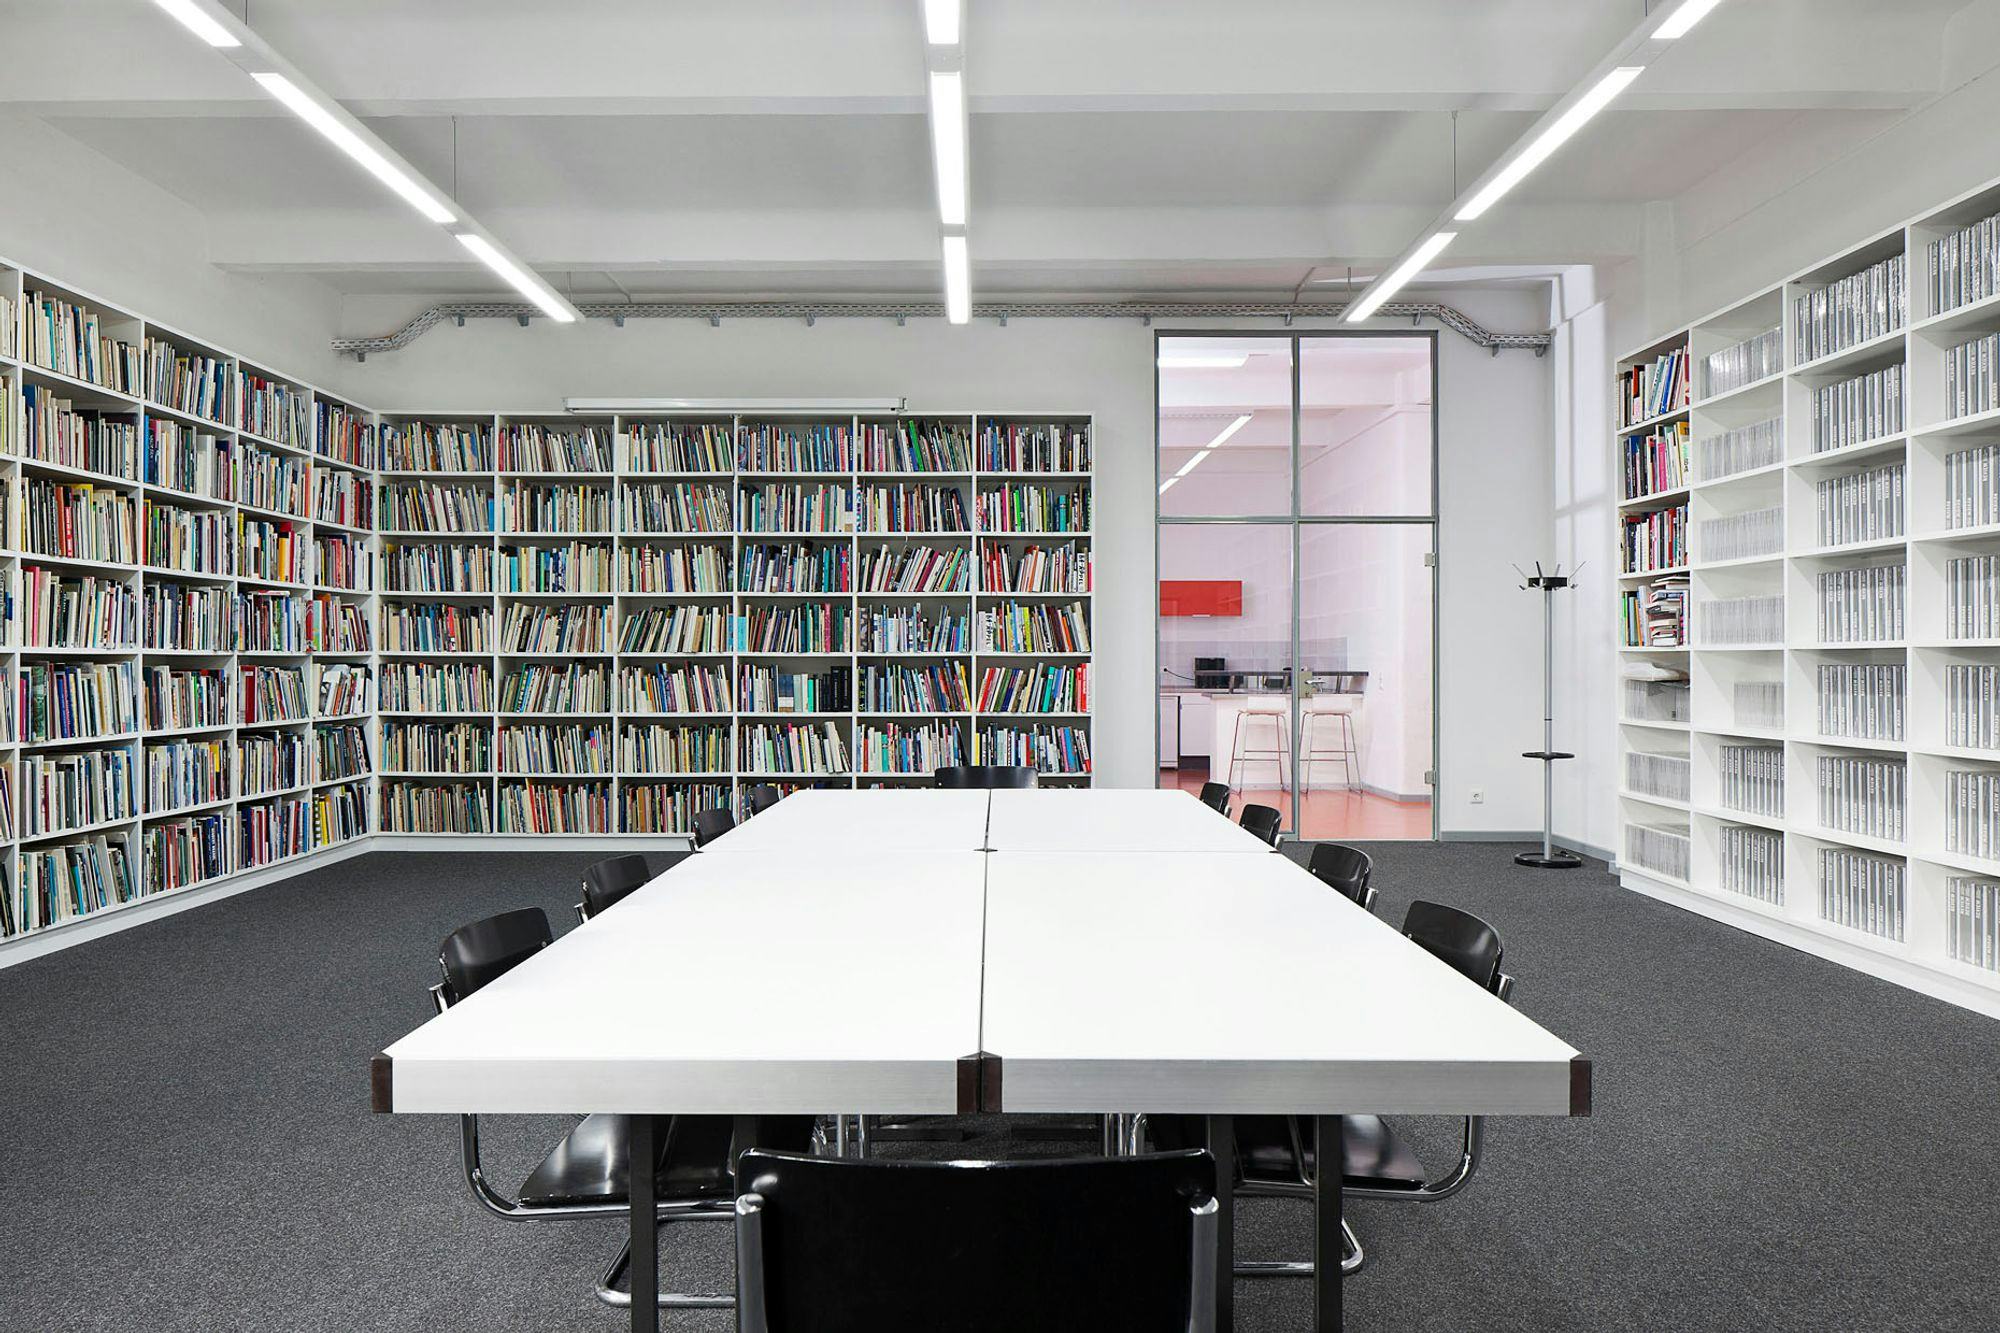 Kunstlerhaus Bethanien library